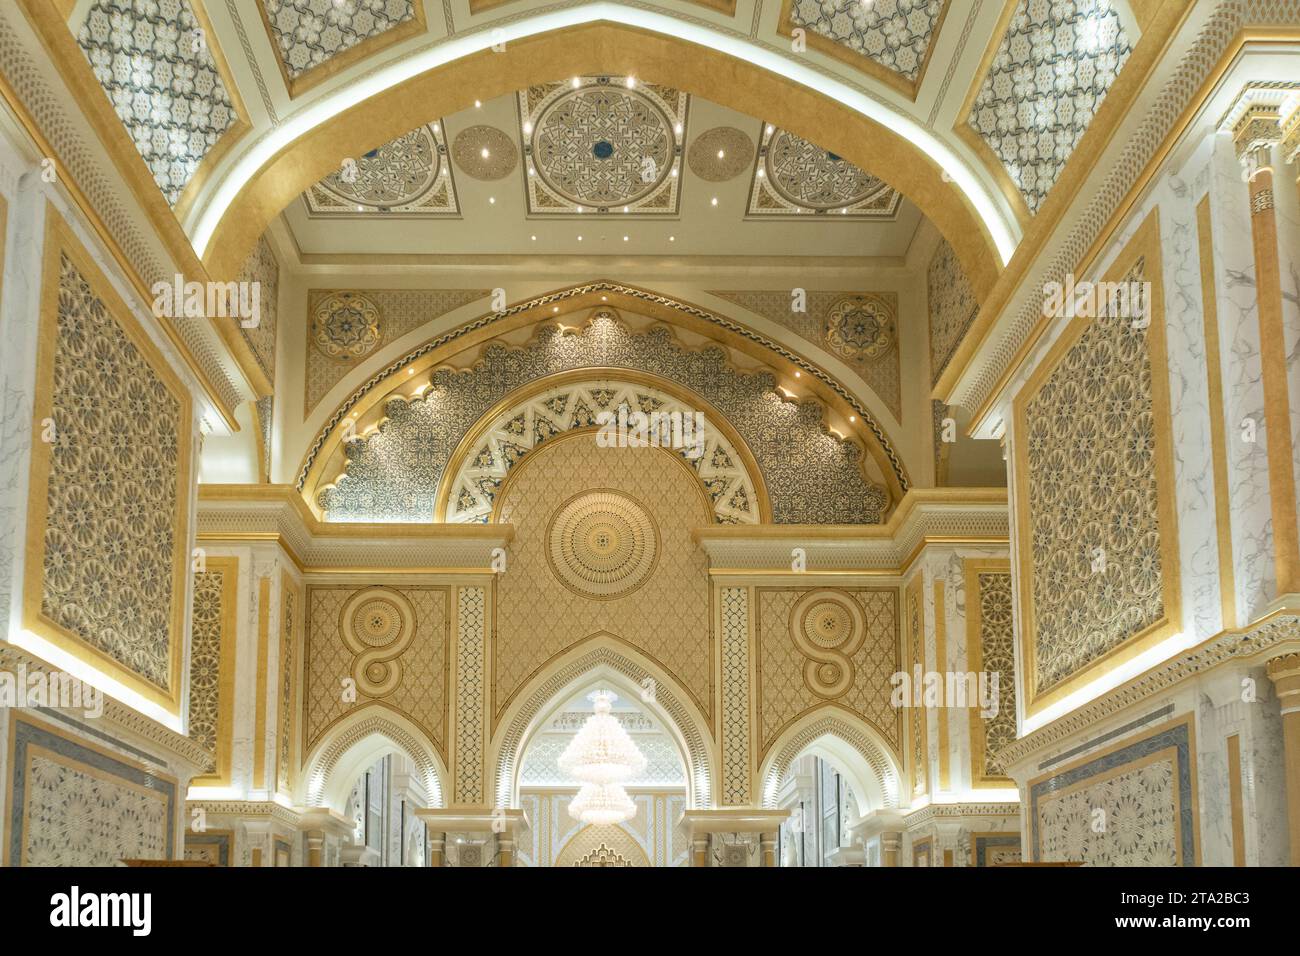 Abu Dhabi, VAE, 08.02.2020. Präsidentenpalast der Vereinigten Arabischen Emirate Qasr Al Watan, Innenansicht der großen Halle reich verzierte Wände und Wände. Stockfoto